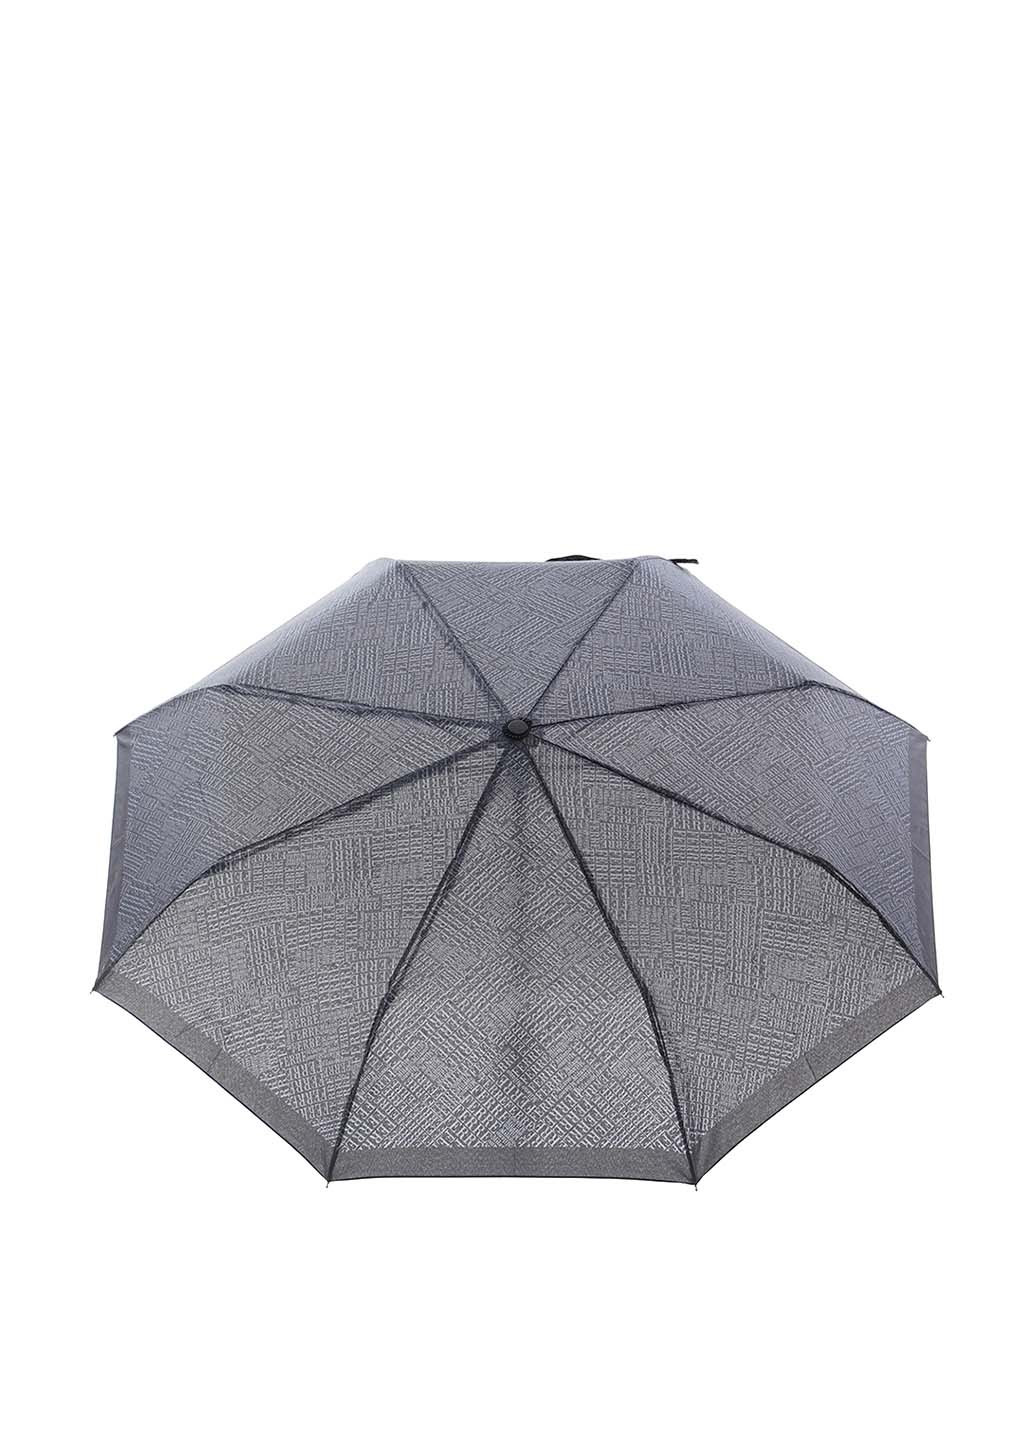 Зонт Ferre Milano 2900055854017 складной чёрный